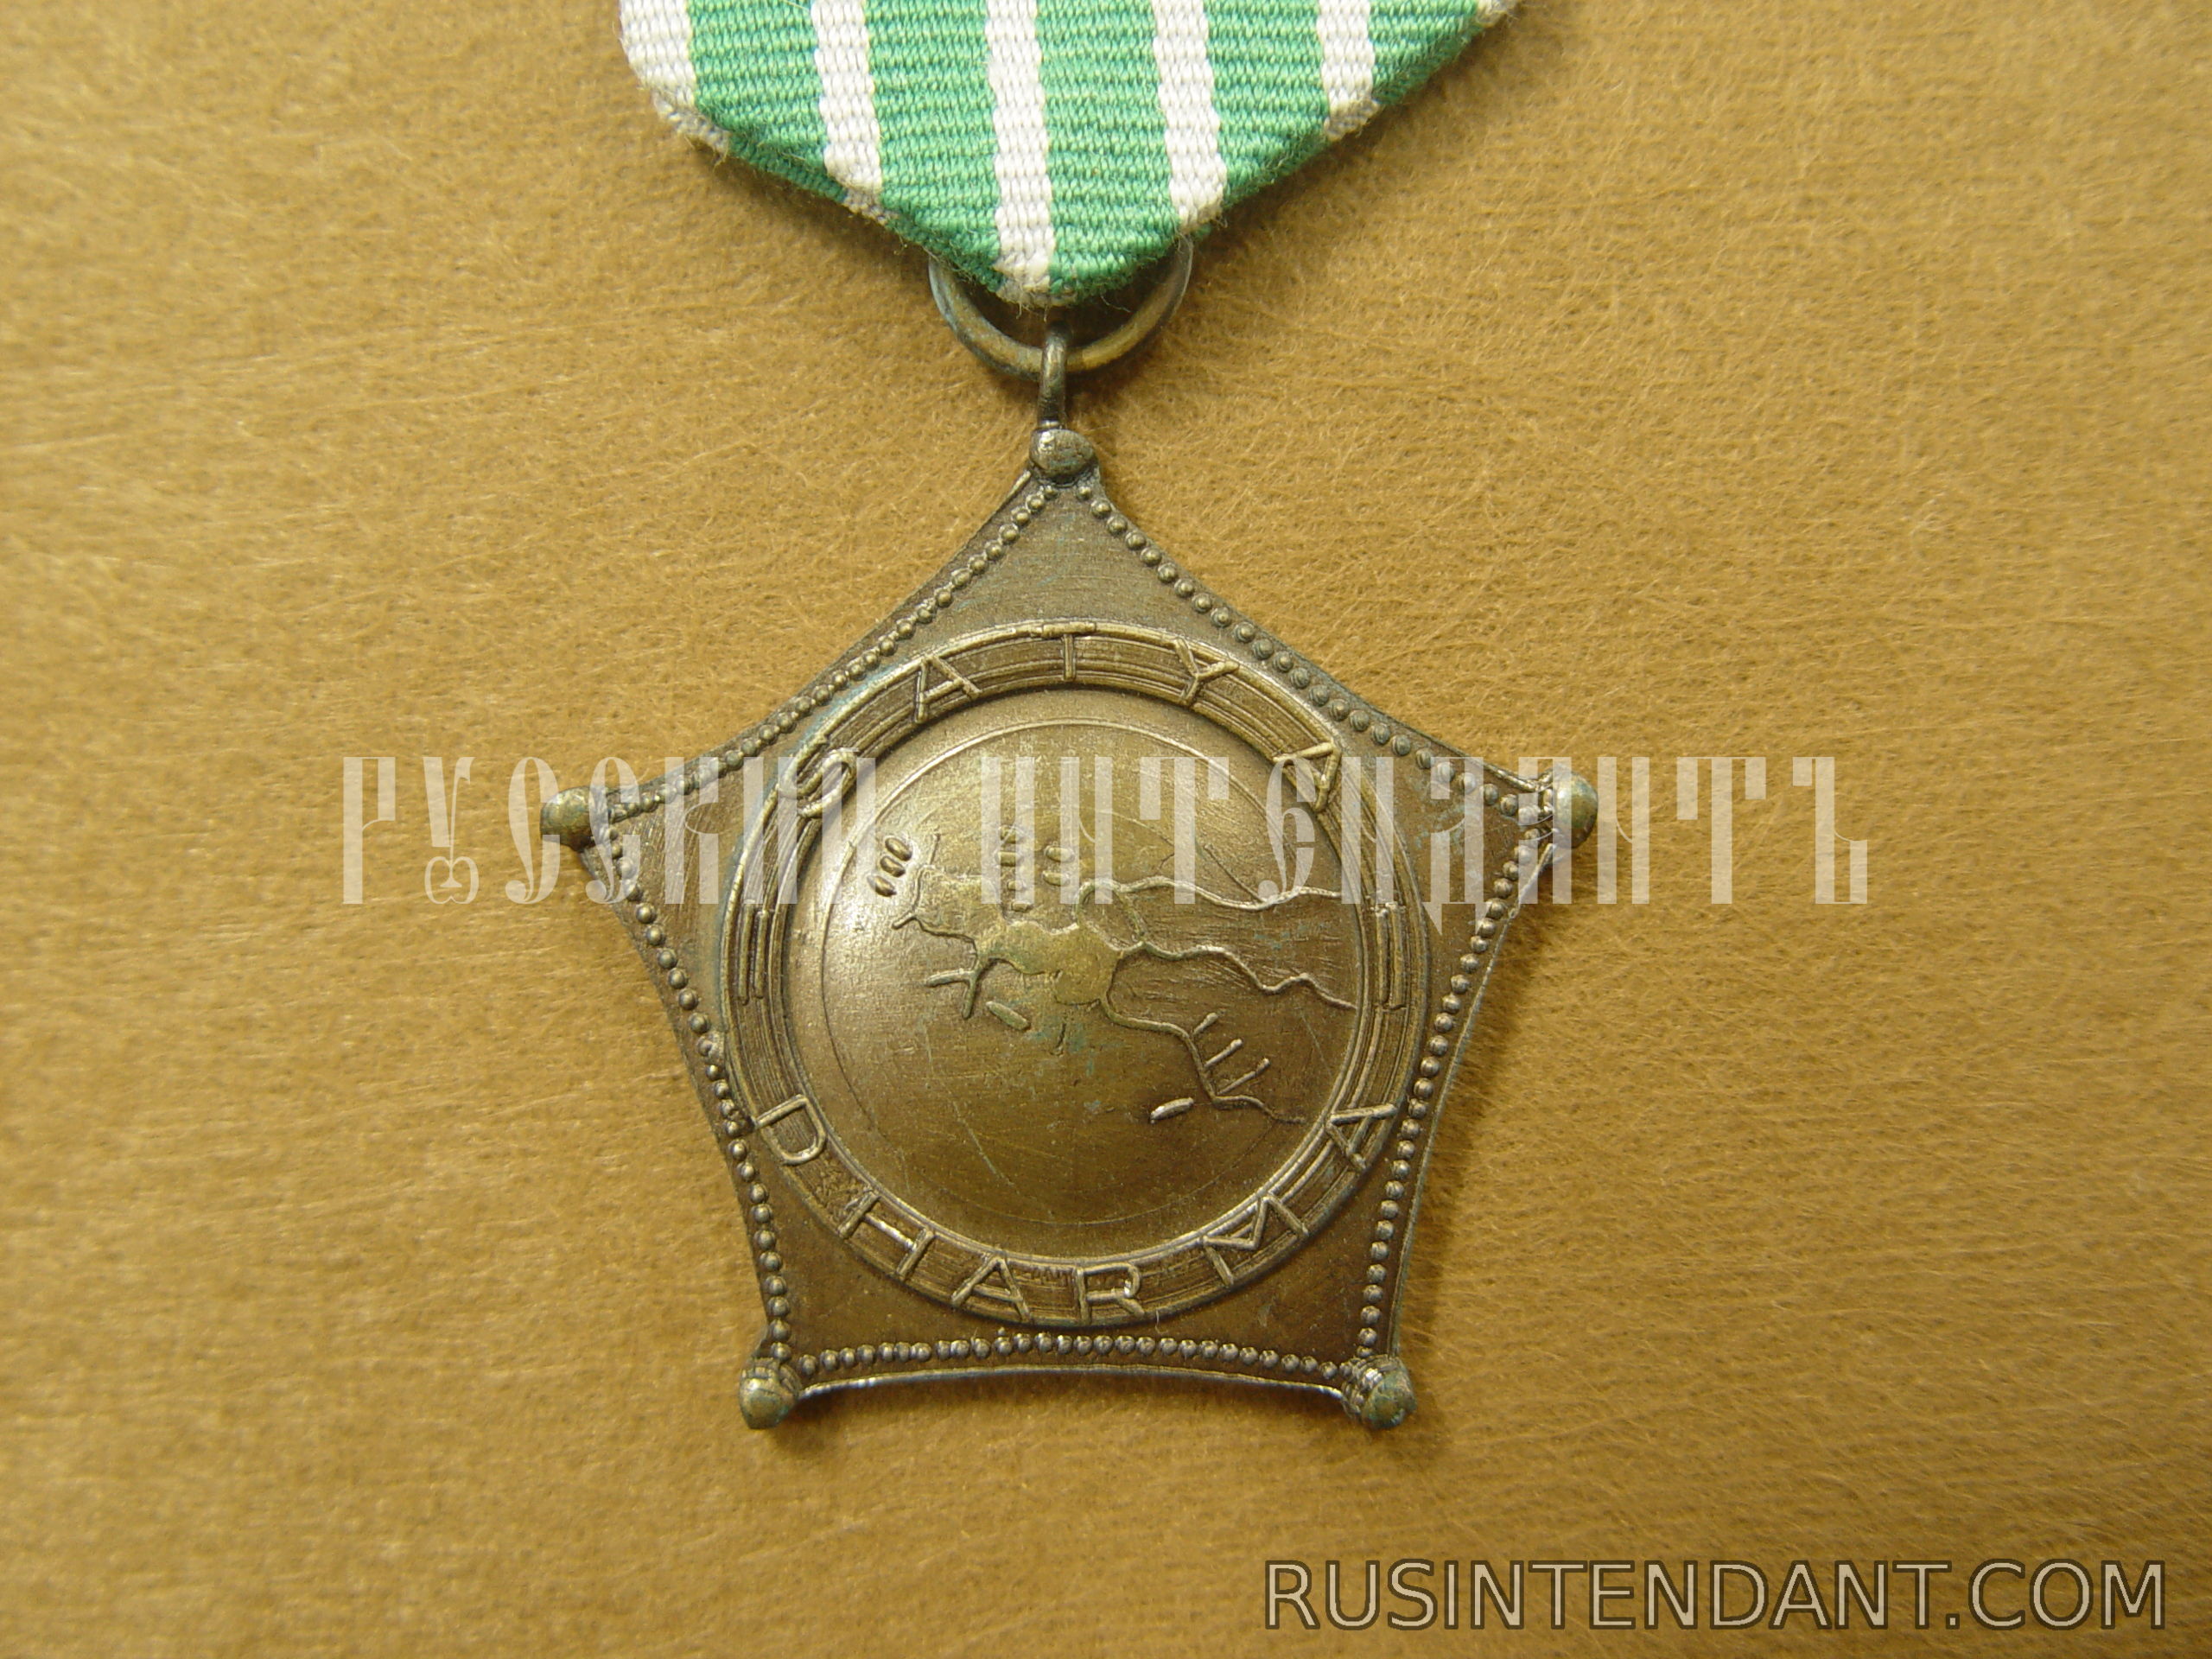 Фото 1: Военная медаль "За операцию Ириан-Джая" 